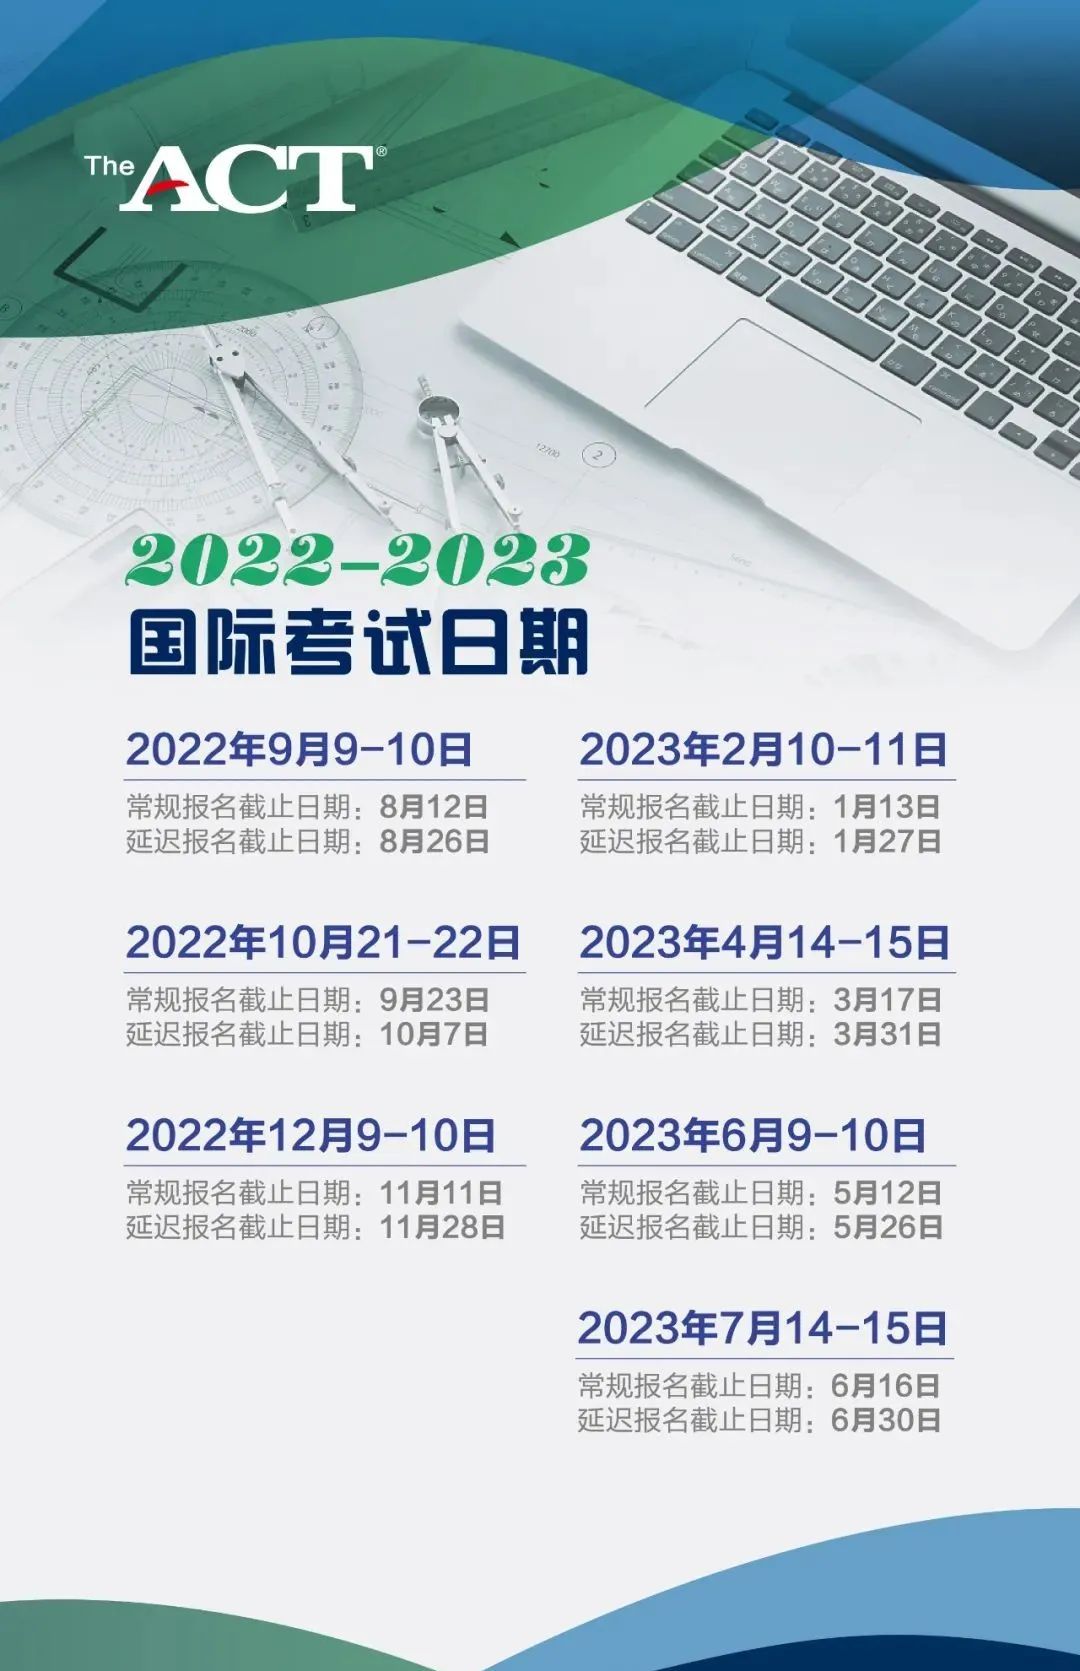 2022-2023 ACT国际考试日期